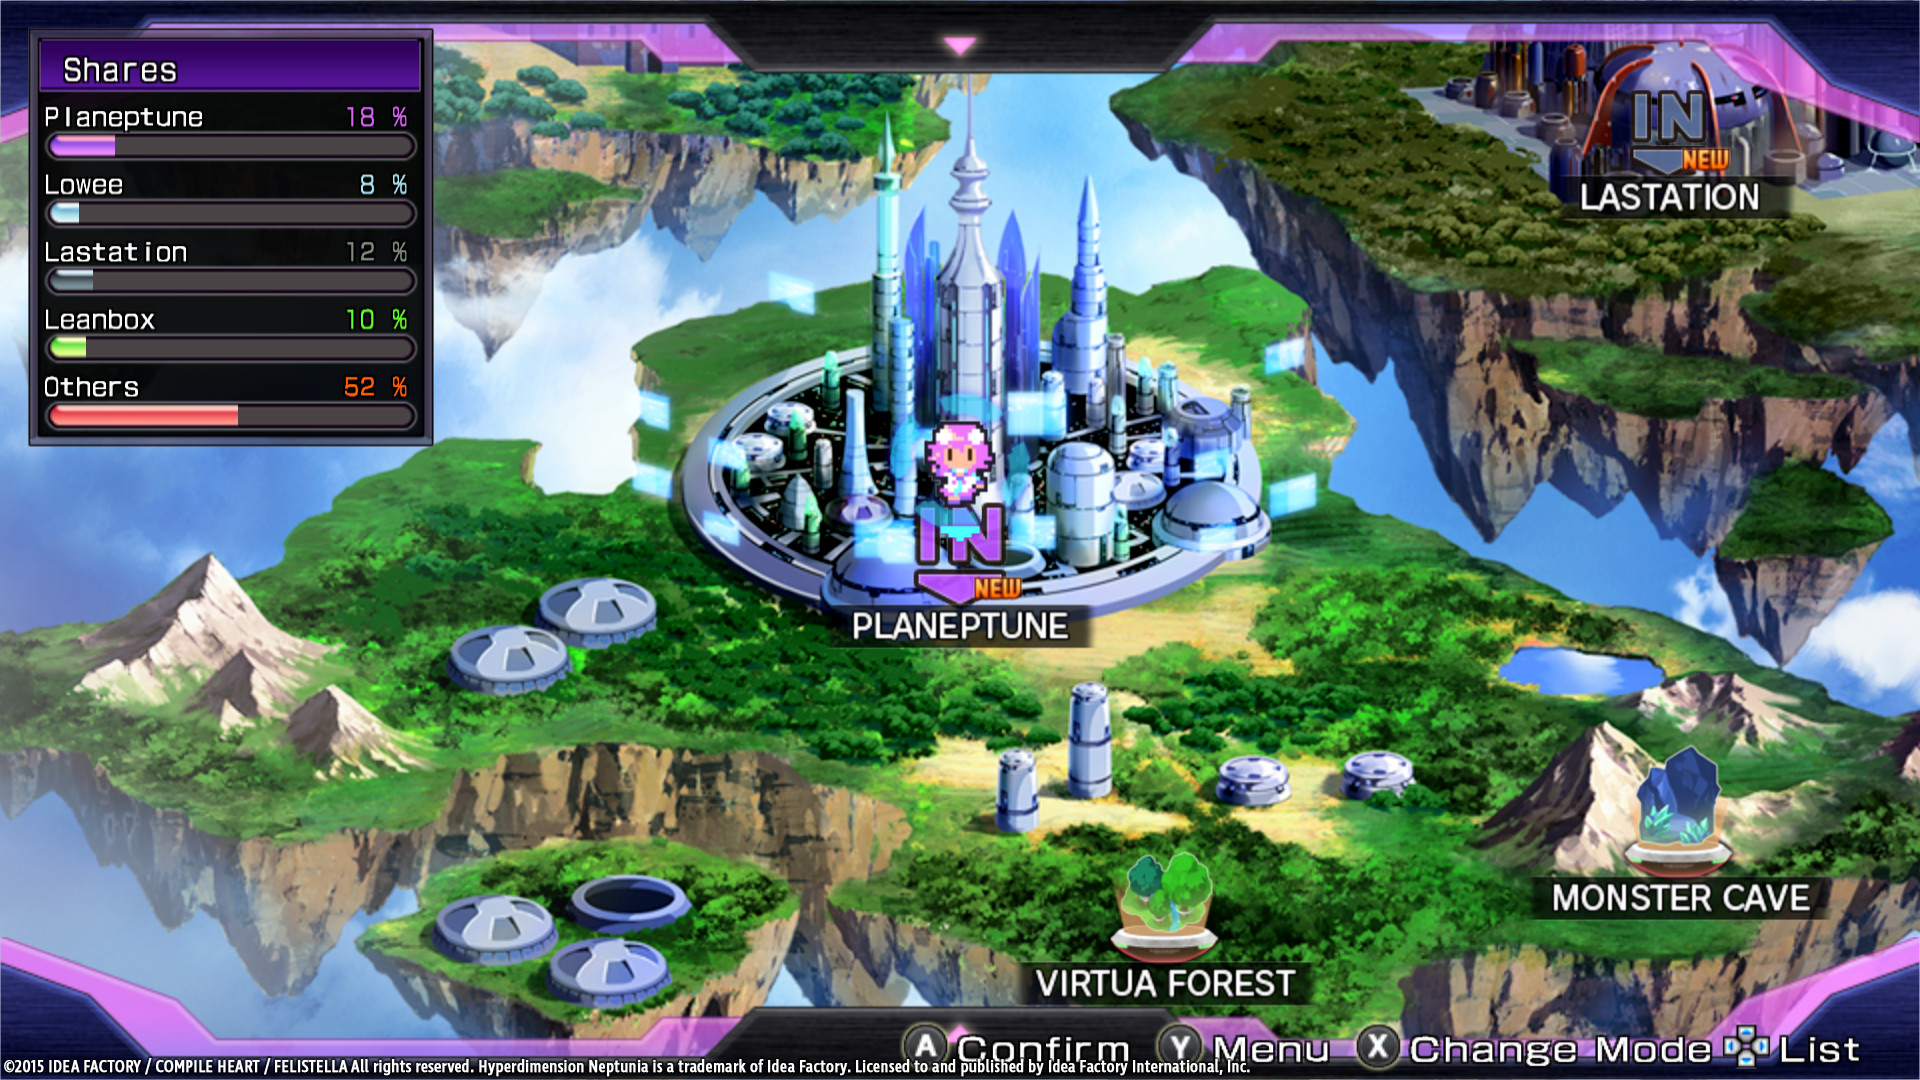 Hyperdimension Neptunia Re;Birth1 Free Download